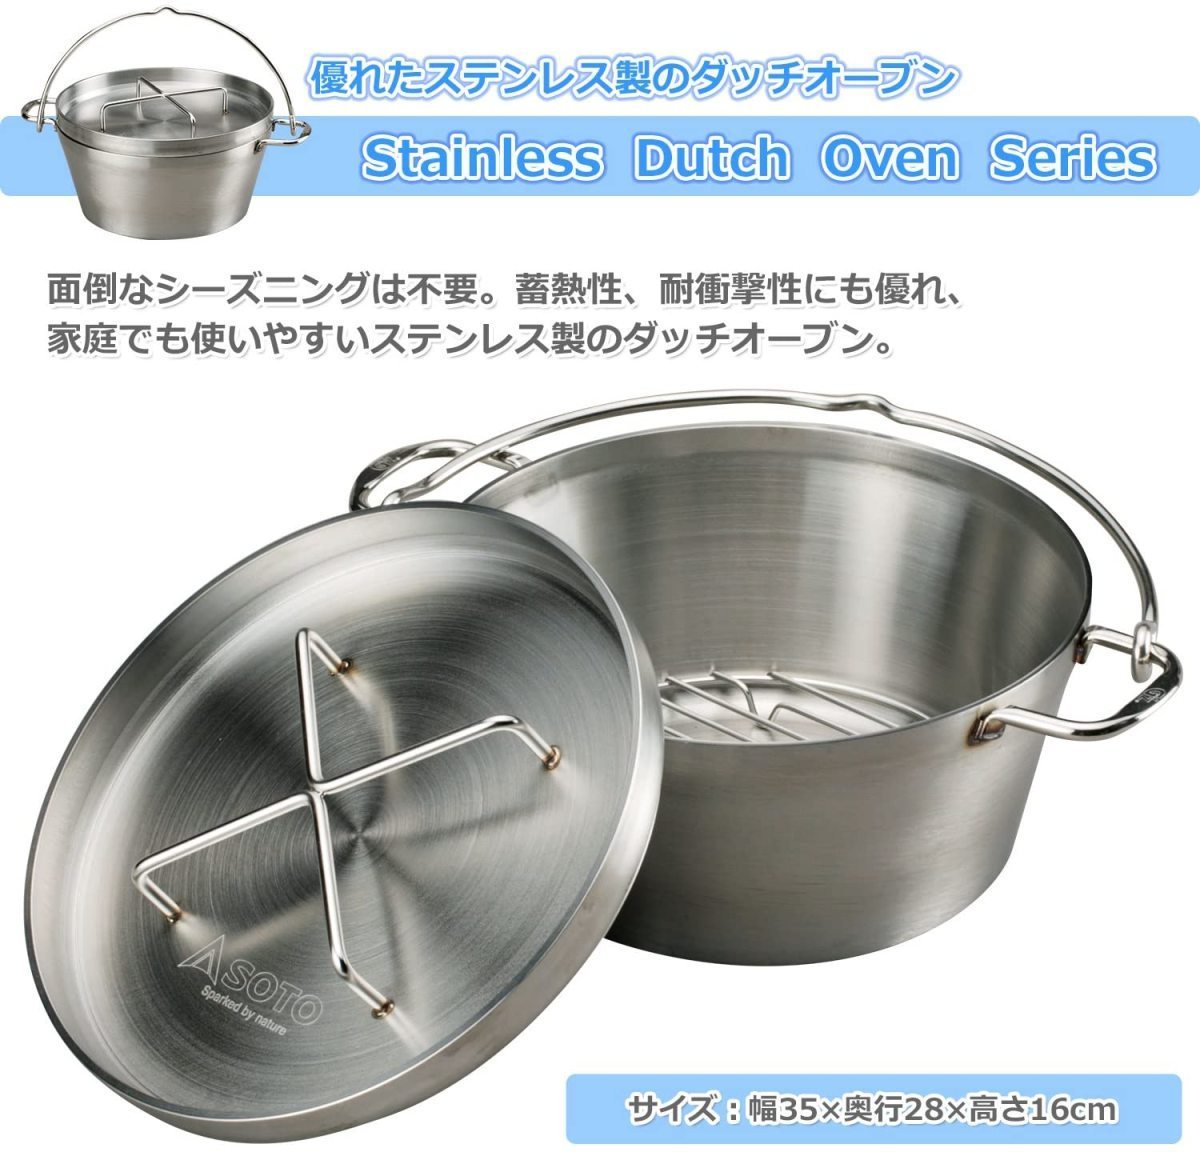 日本人気超絶の ソト(SOTO) 新富士バーナー ステンレスダッチオーブン